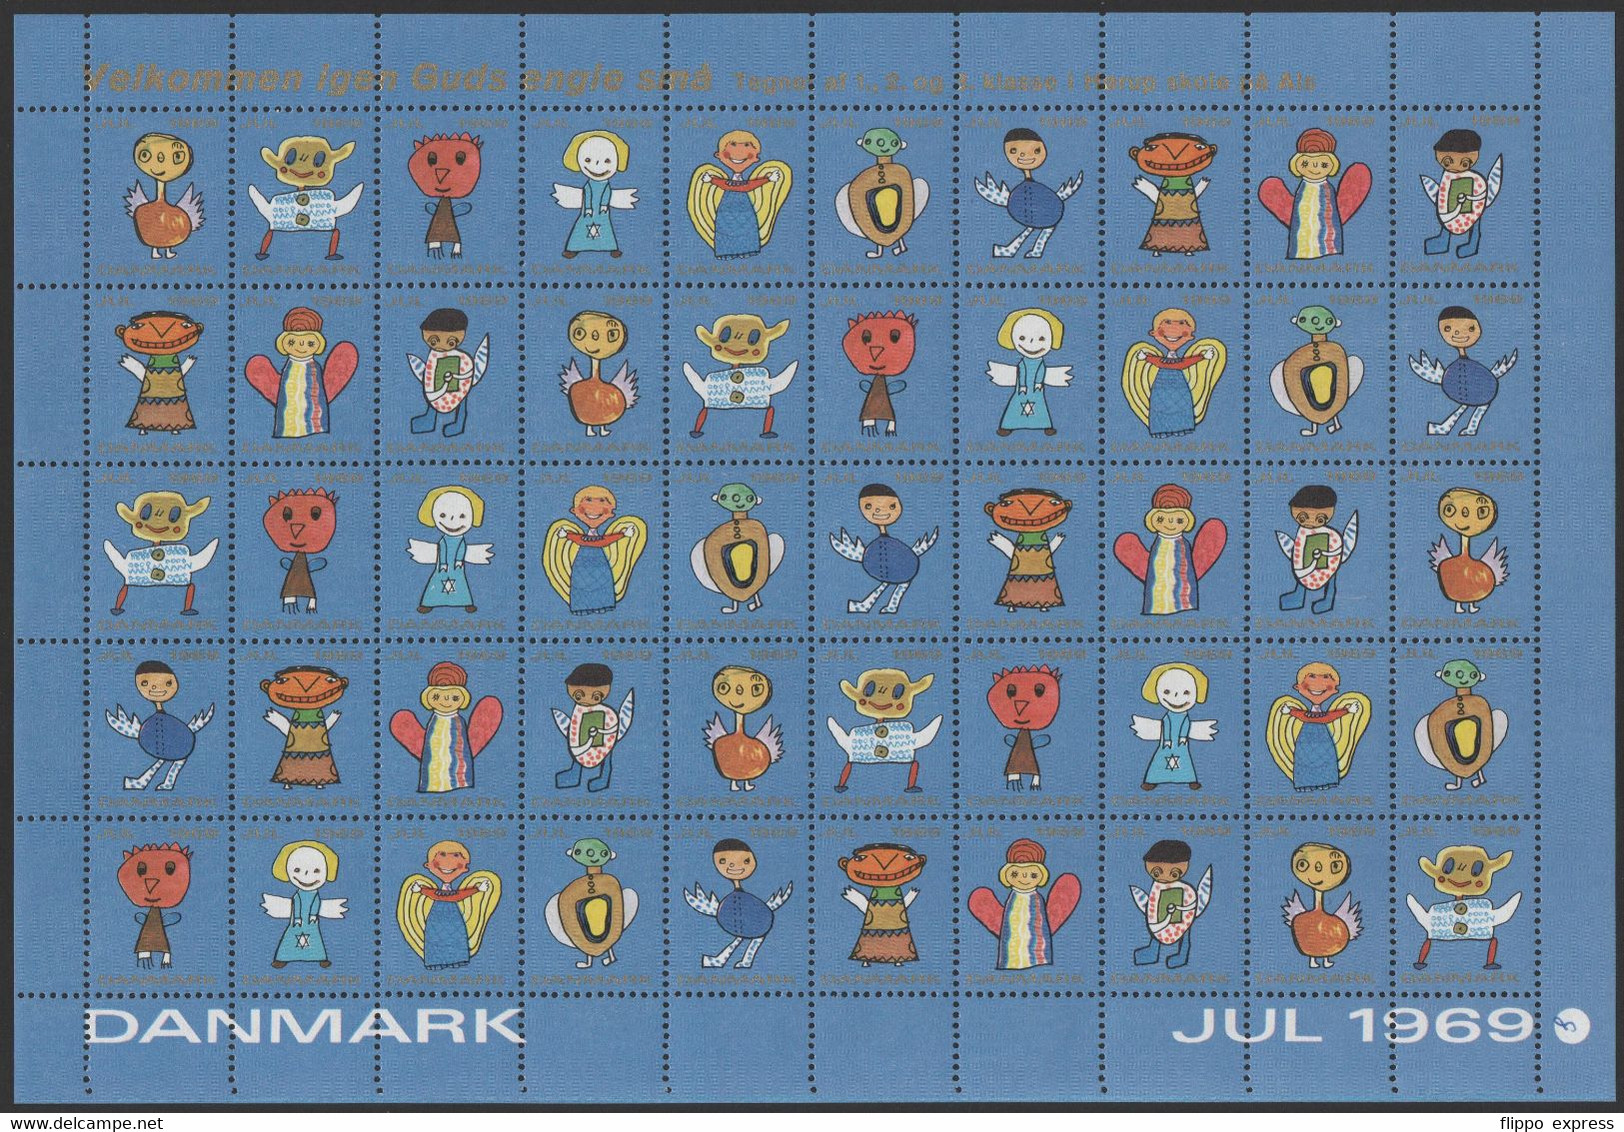 Denmark1969 Julemaerke, Mint Sheet Of 50 Stamps, Unfolded. - Feuilles Complètes Et Multiples